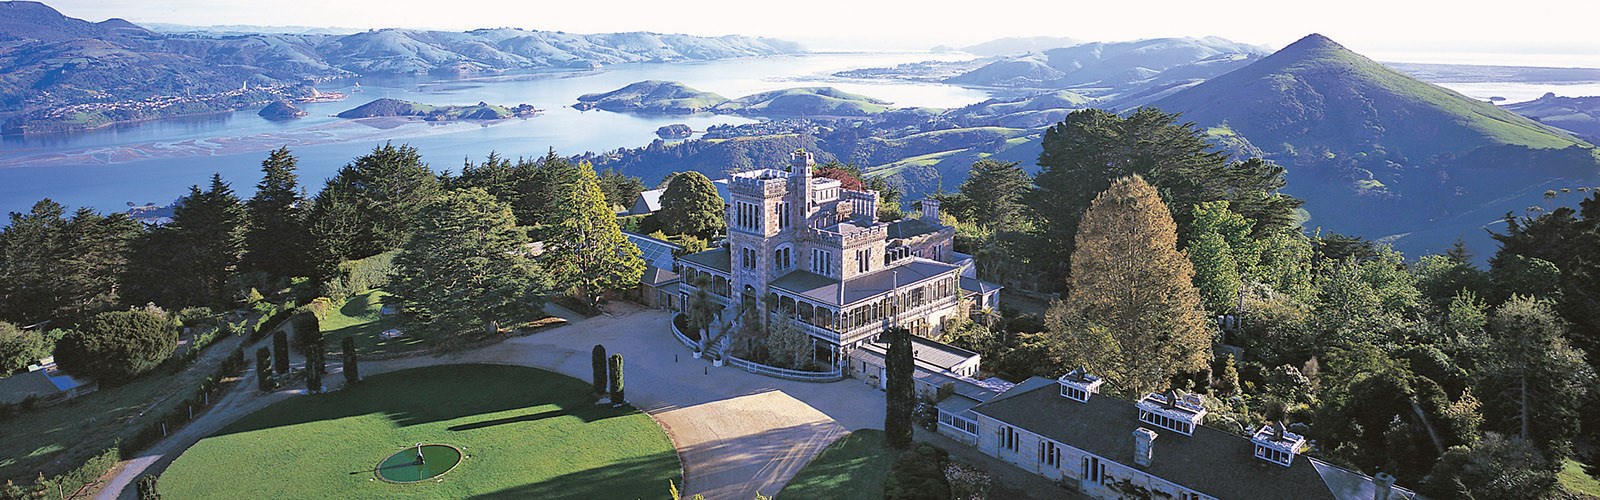 Единственный замок в Новой Зеландии